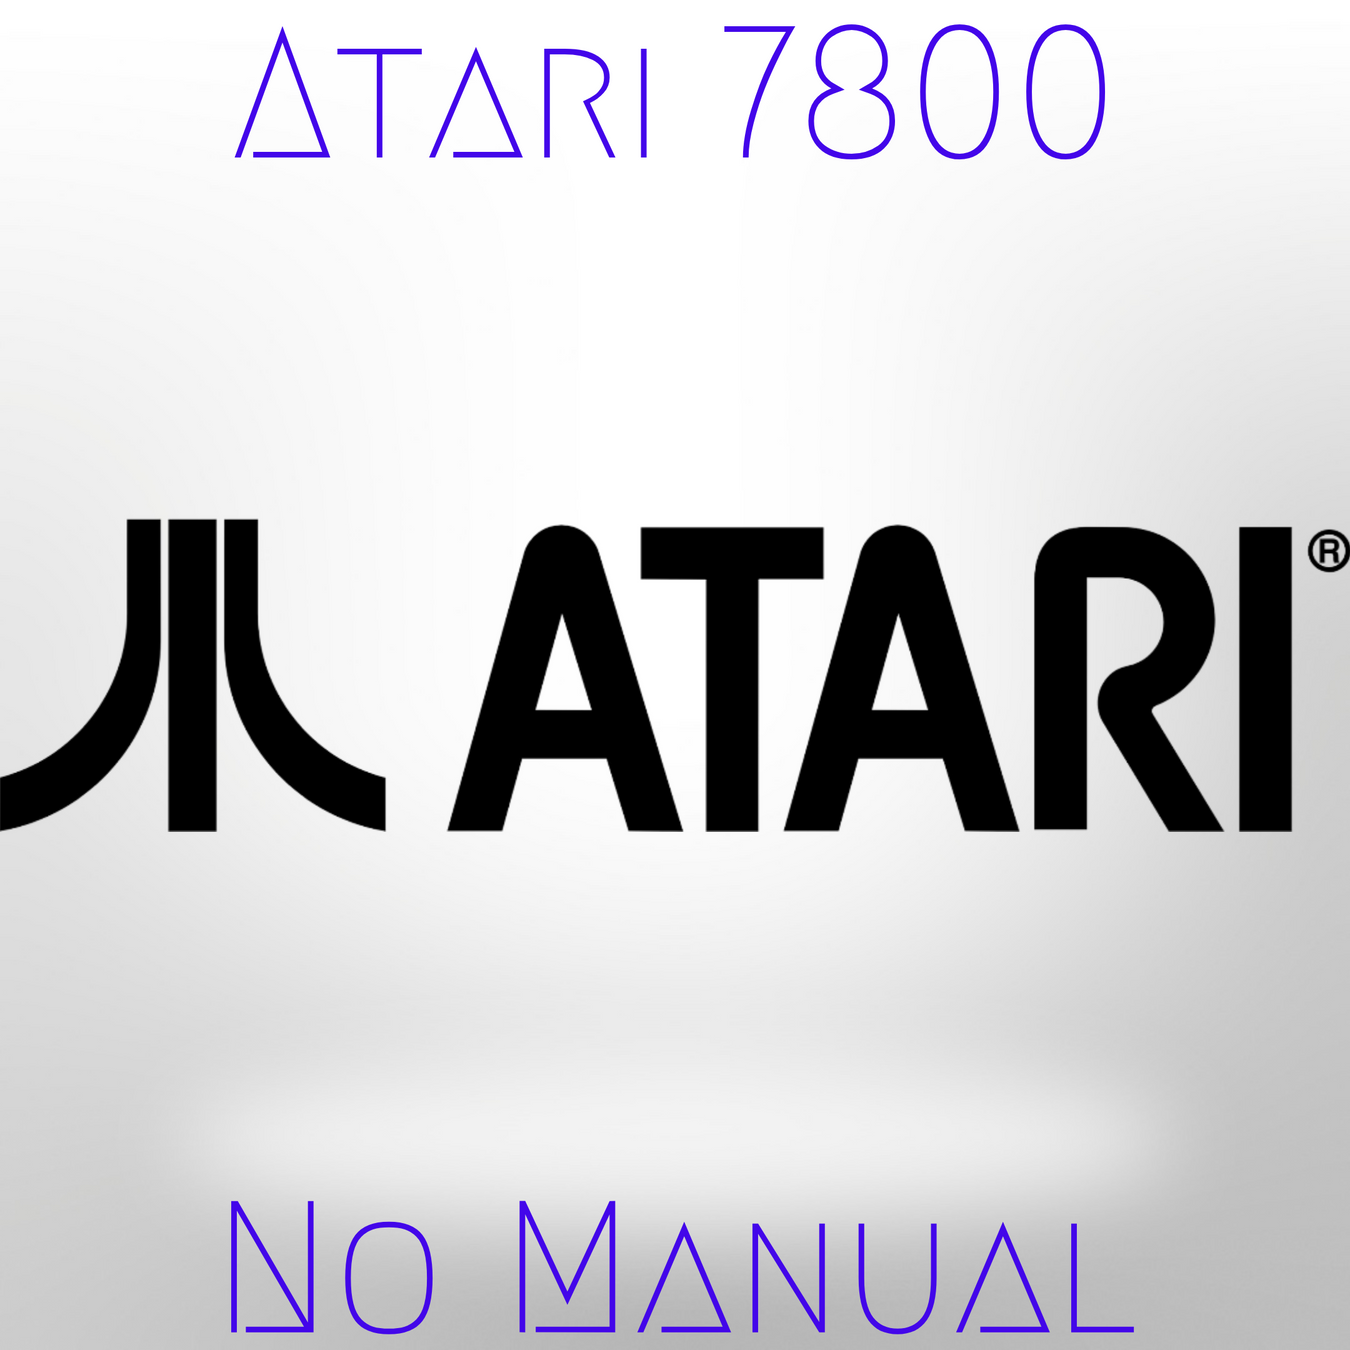 Atari 7800 No Manual section